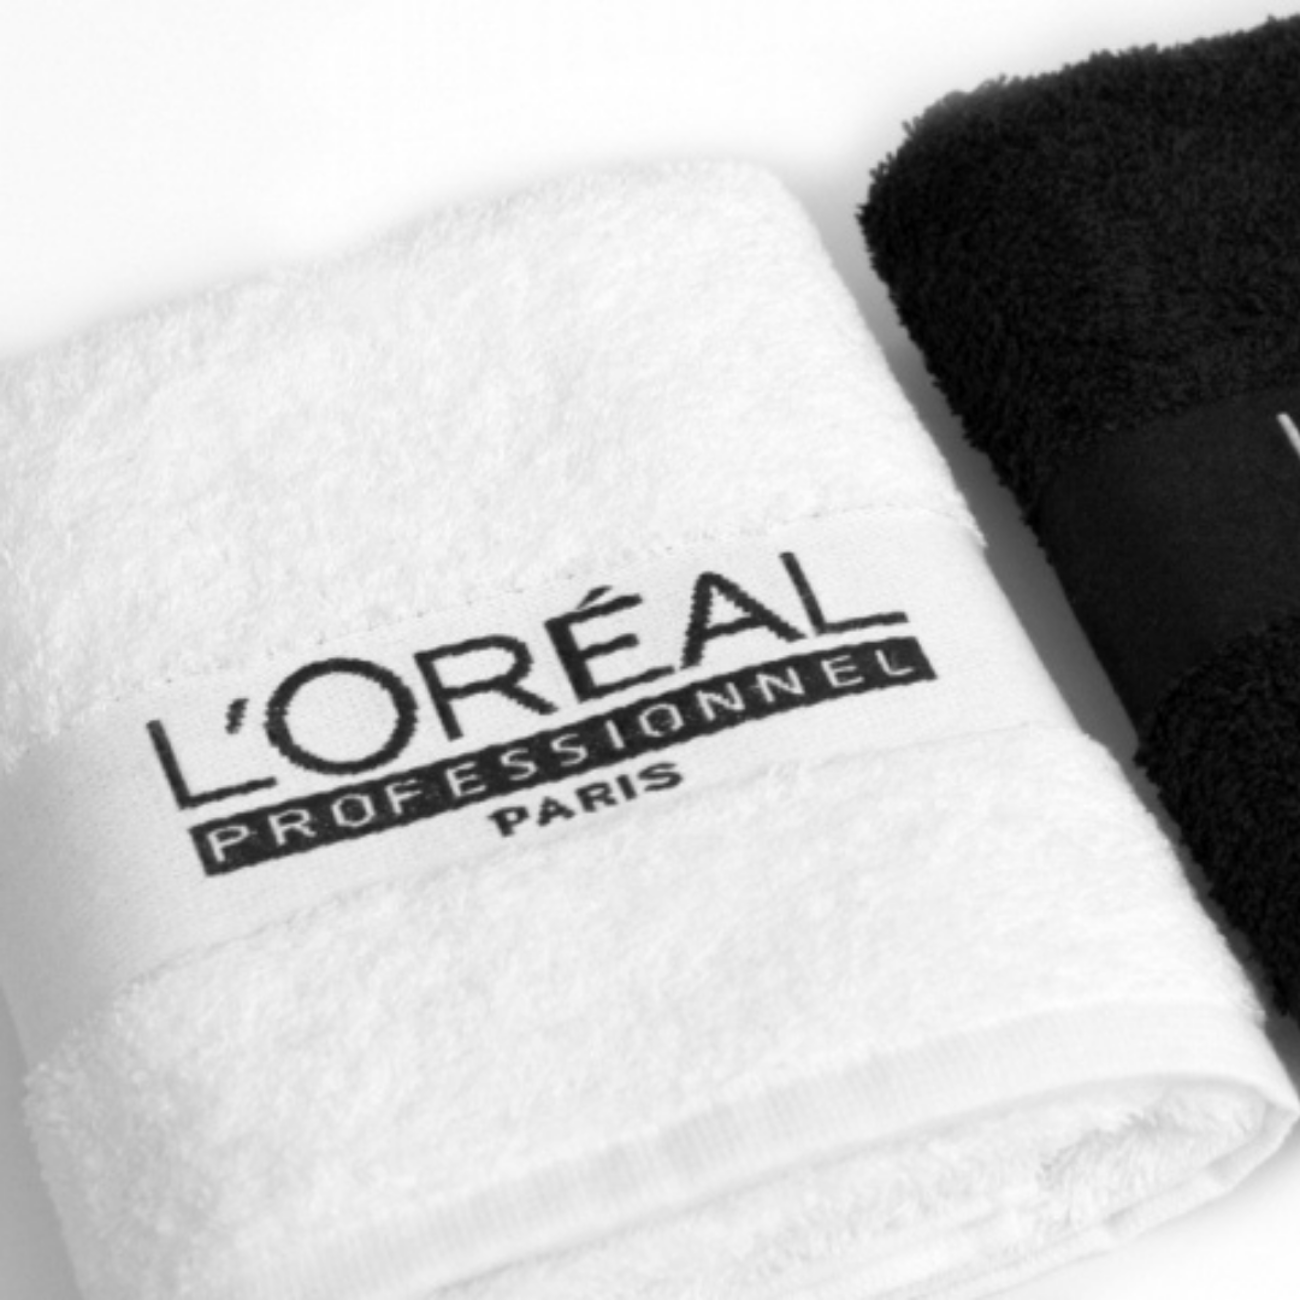 Купить полотенце размер. Полотенце. Полотенце с логотипом. Вышивка логотипа на полотенце. Махровое полотенце с логотипом.